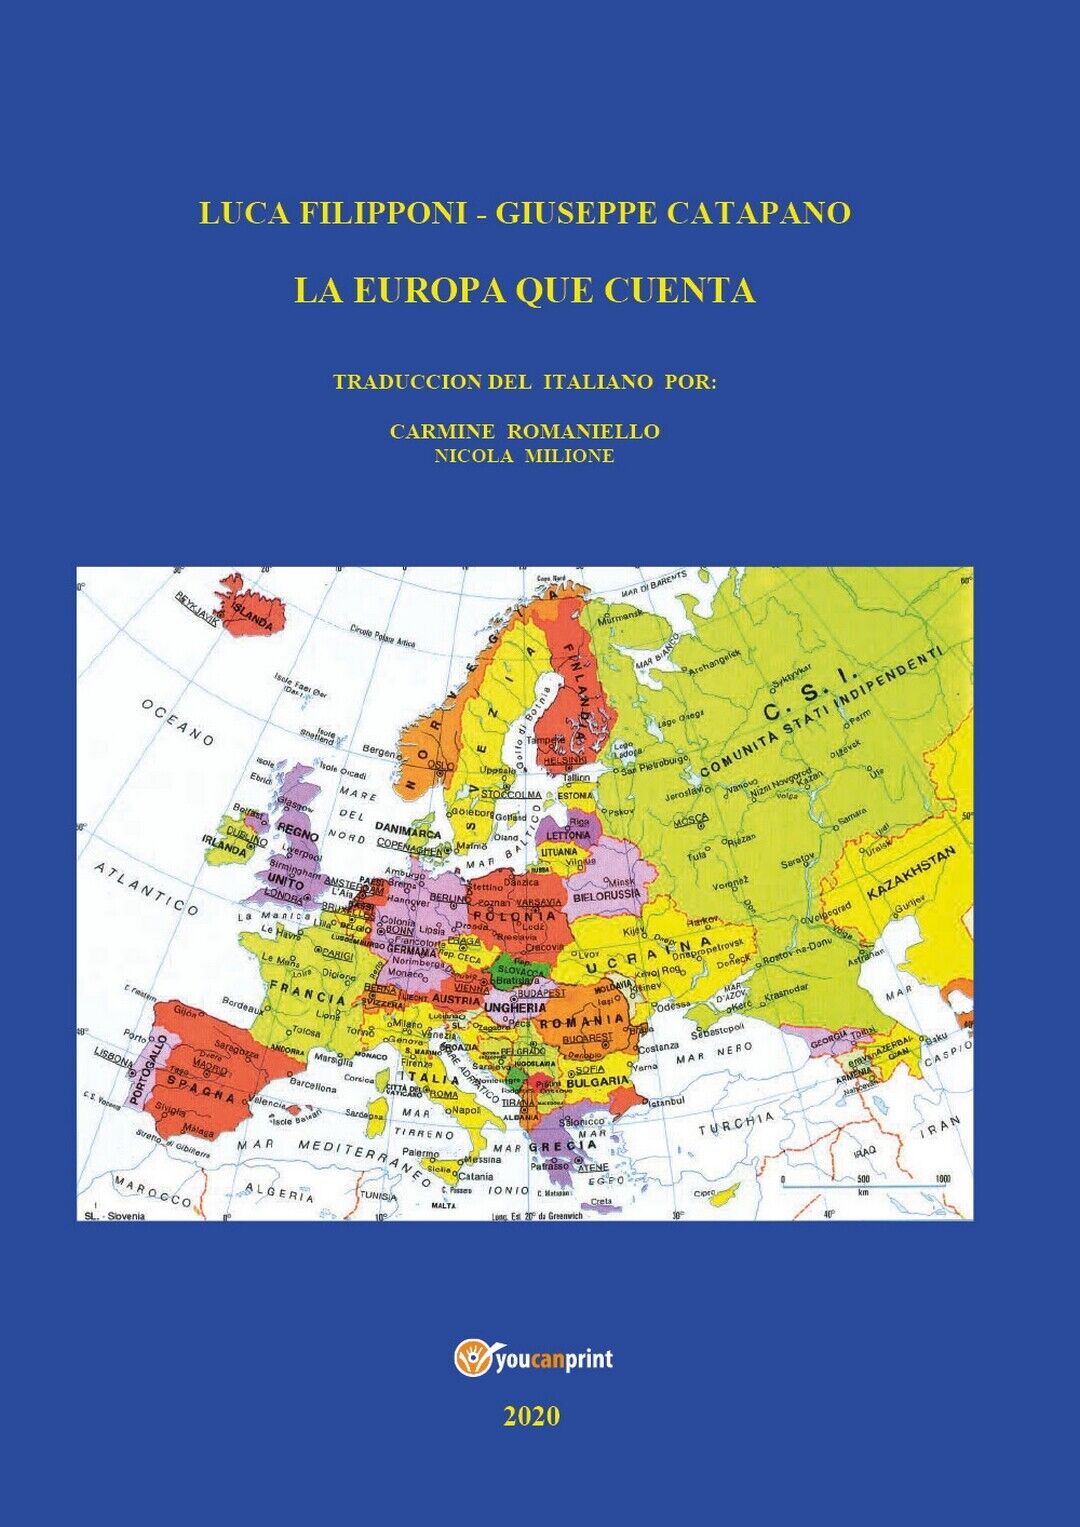 L'Europa que cuenta  di Luca Filipponi - Giuseppe Catapano,  2020,  Youcanprint libro usato